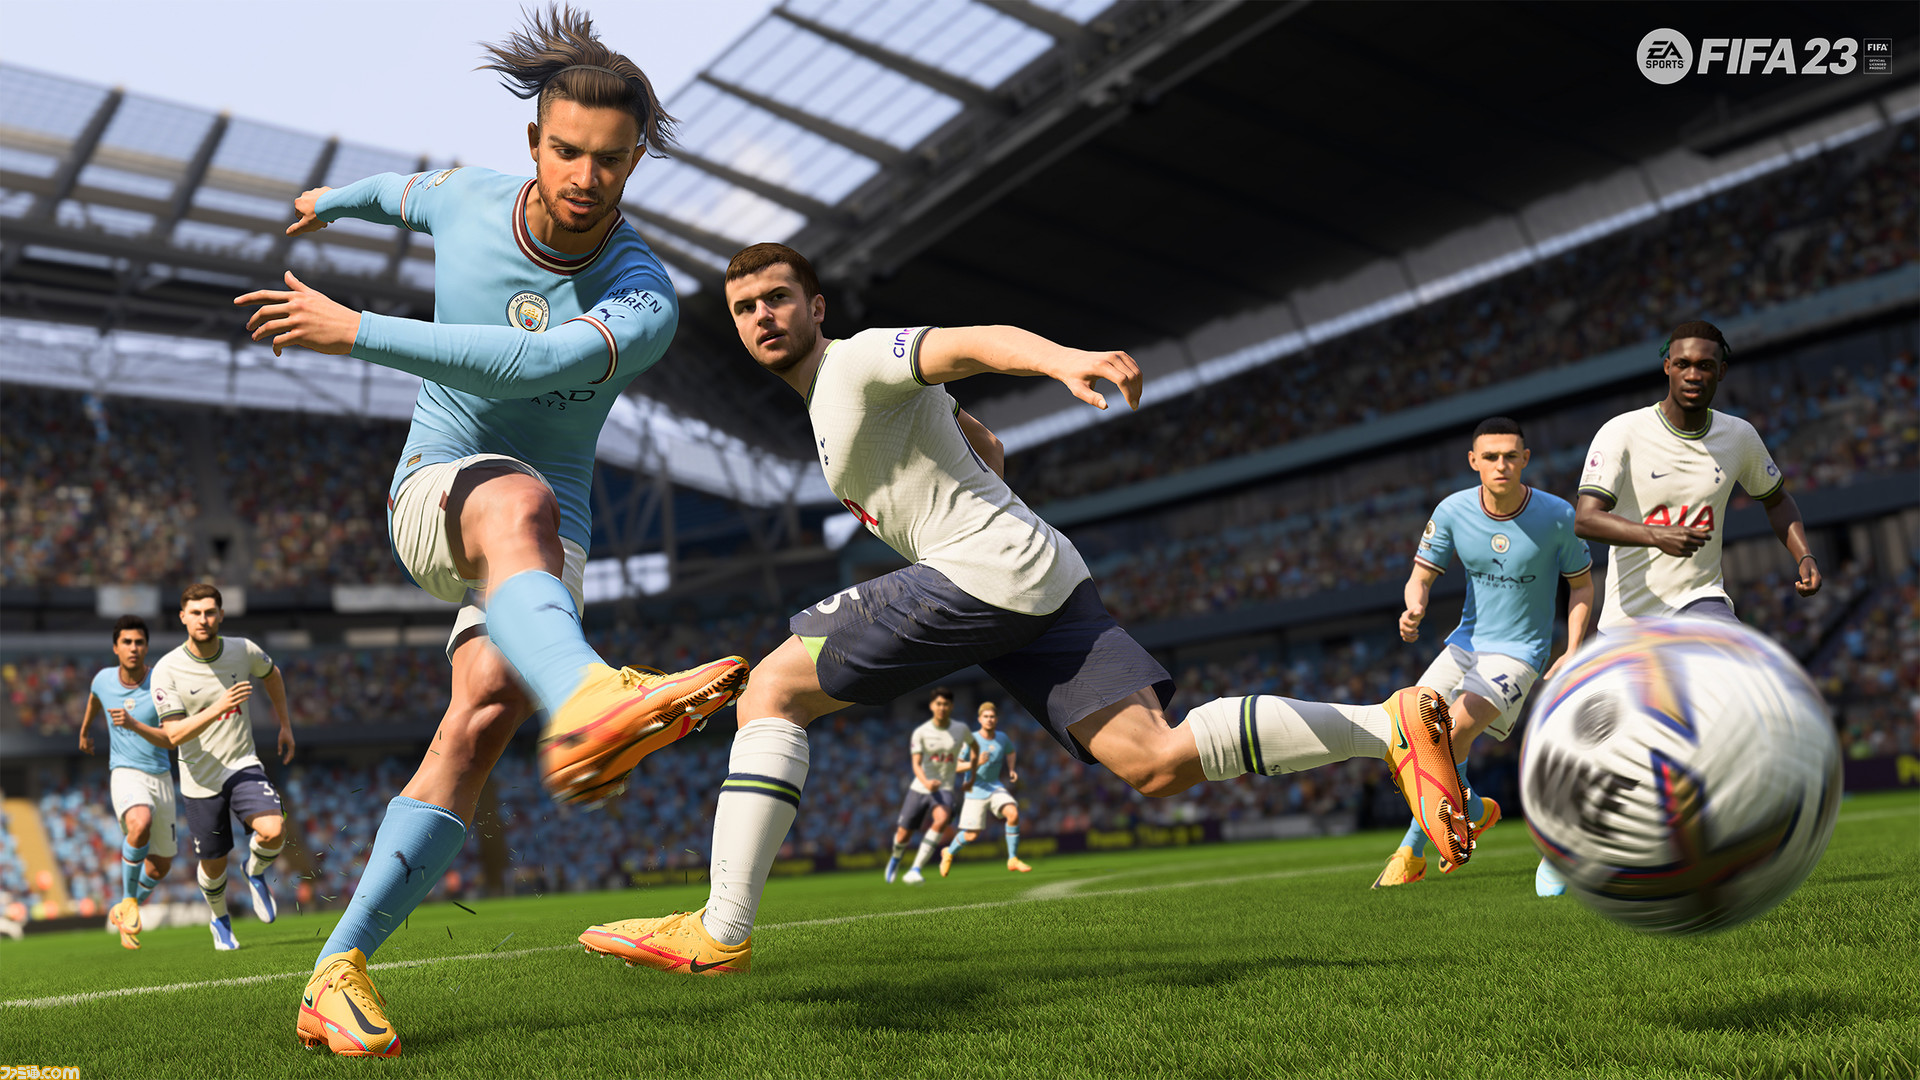 FIFA 23』プロクラブモードとVoltaモードが経験値などの要素を共有化へ